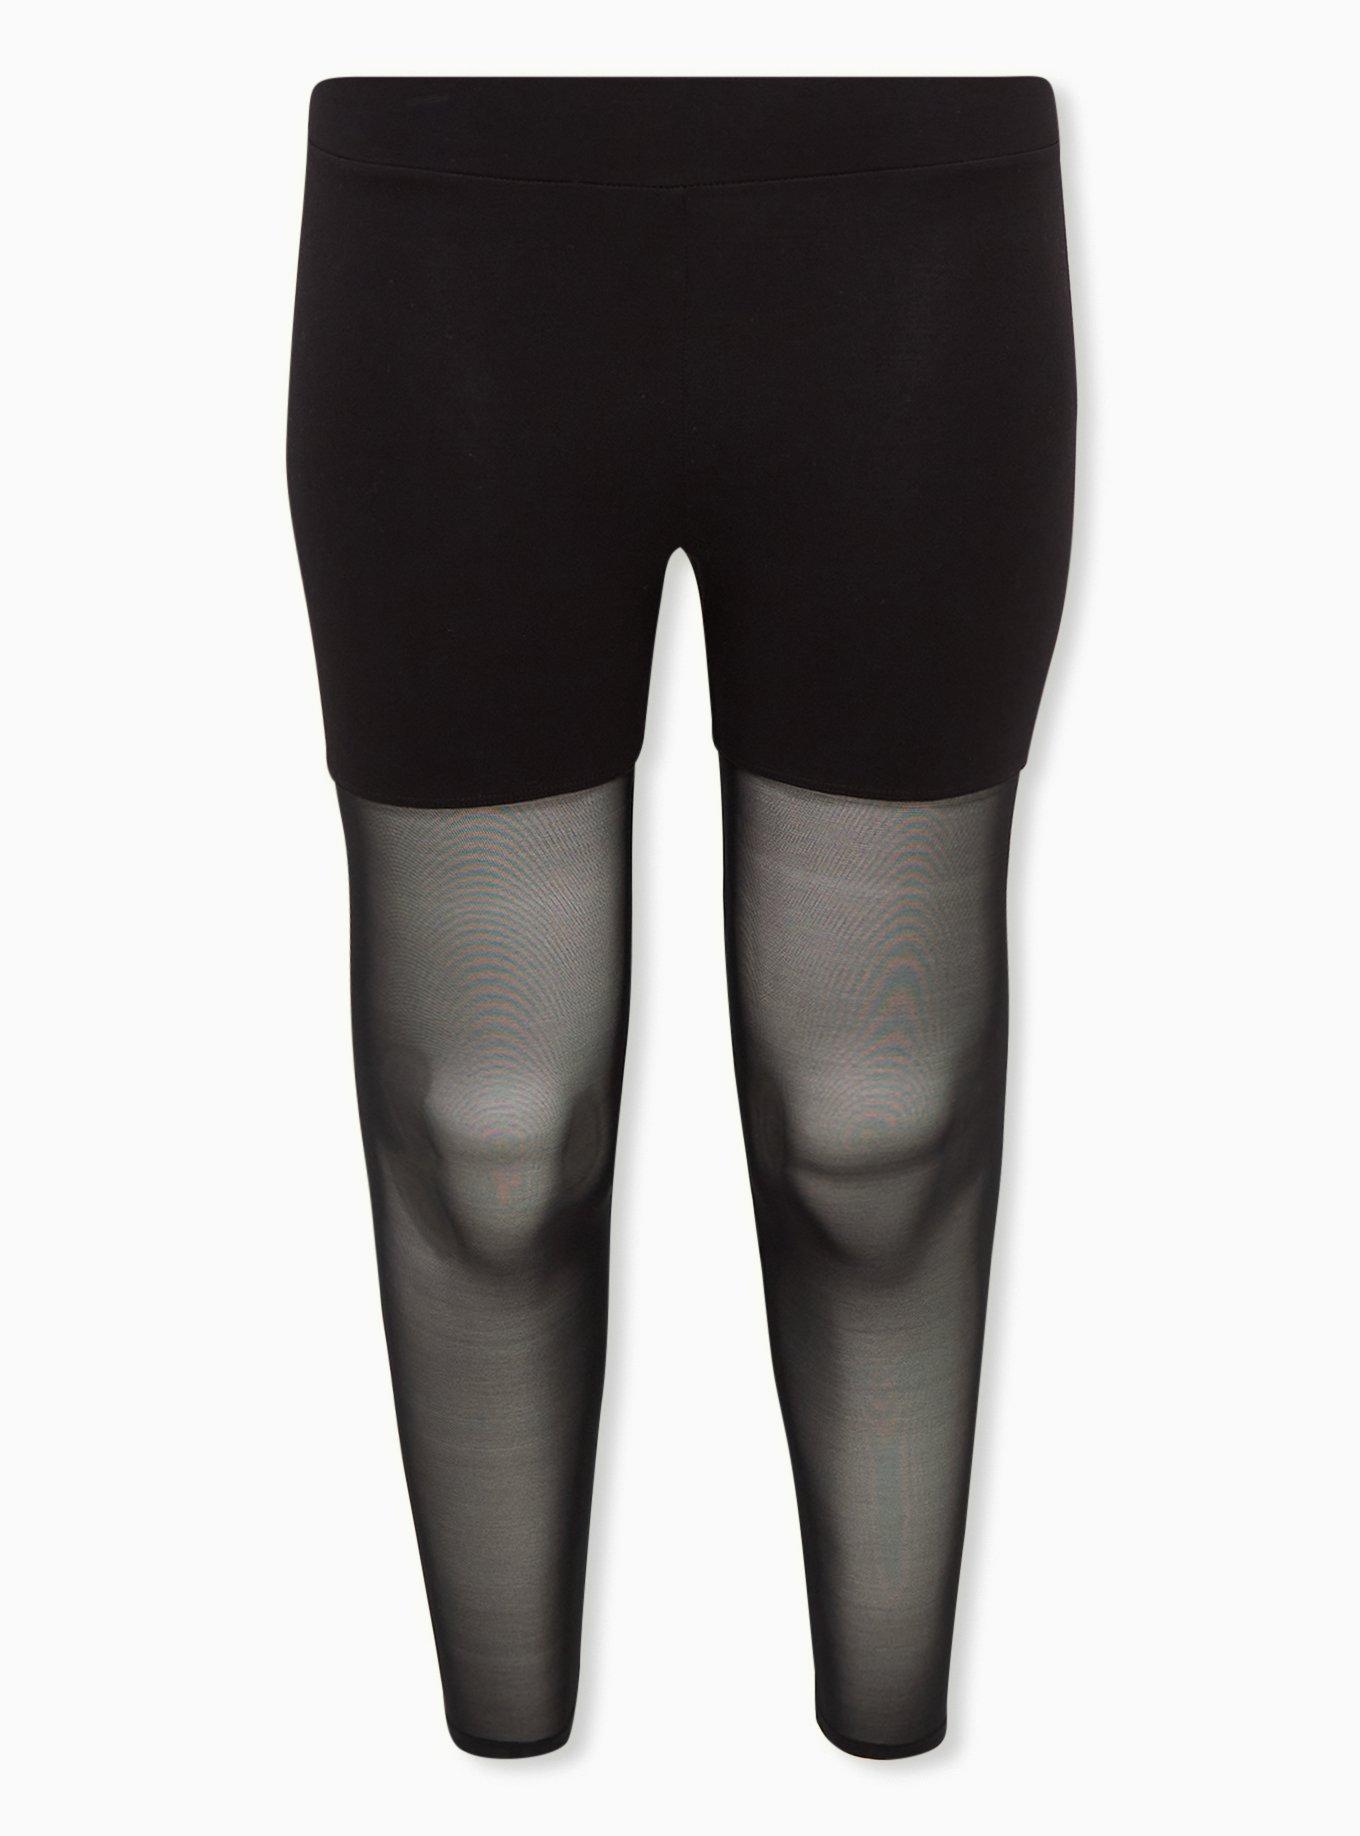 Plus Size - Premium Legging - Lasercut Cotton Black - Torrid